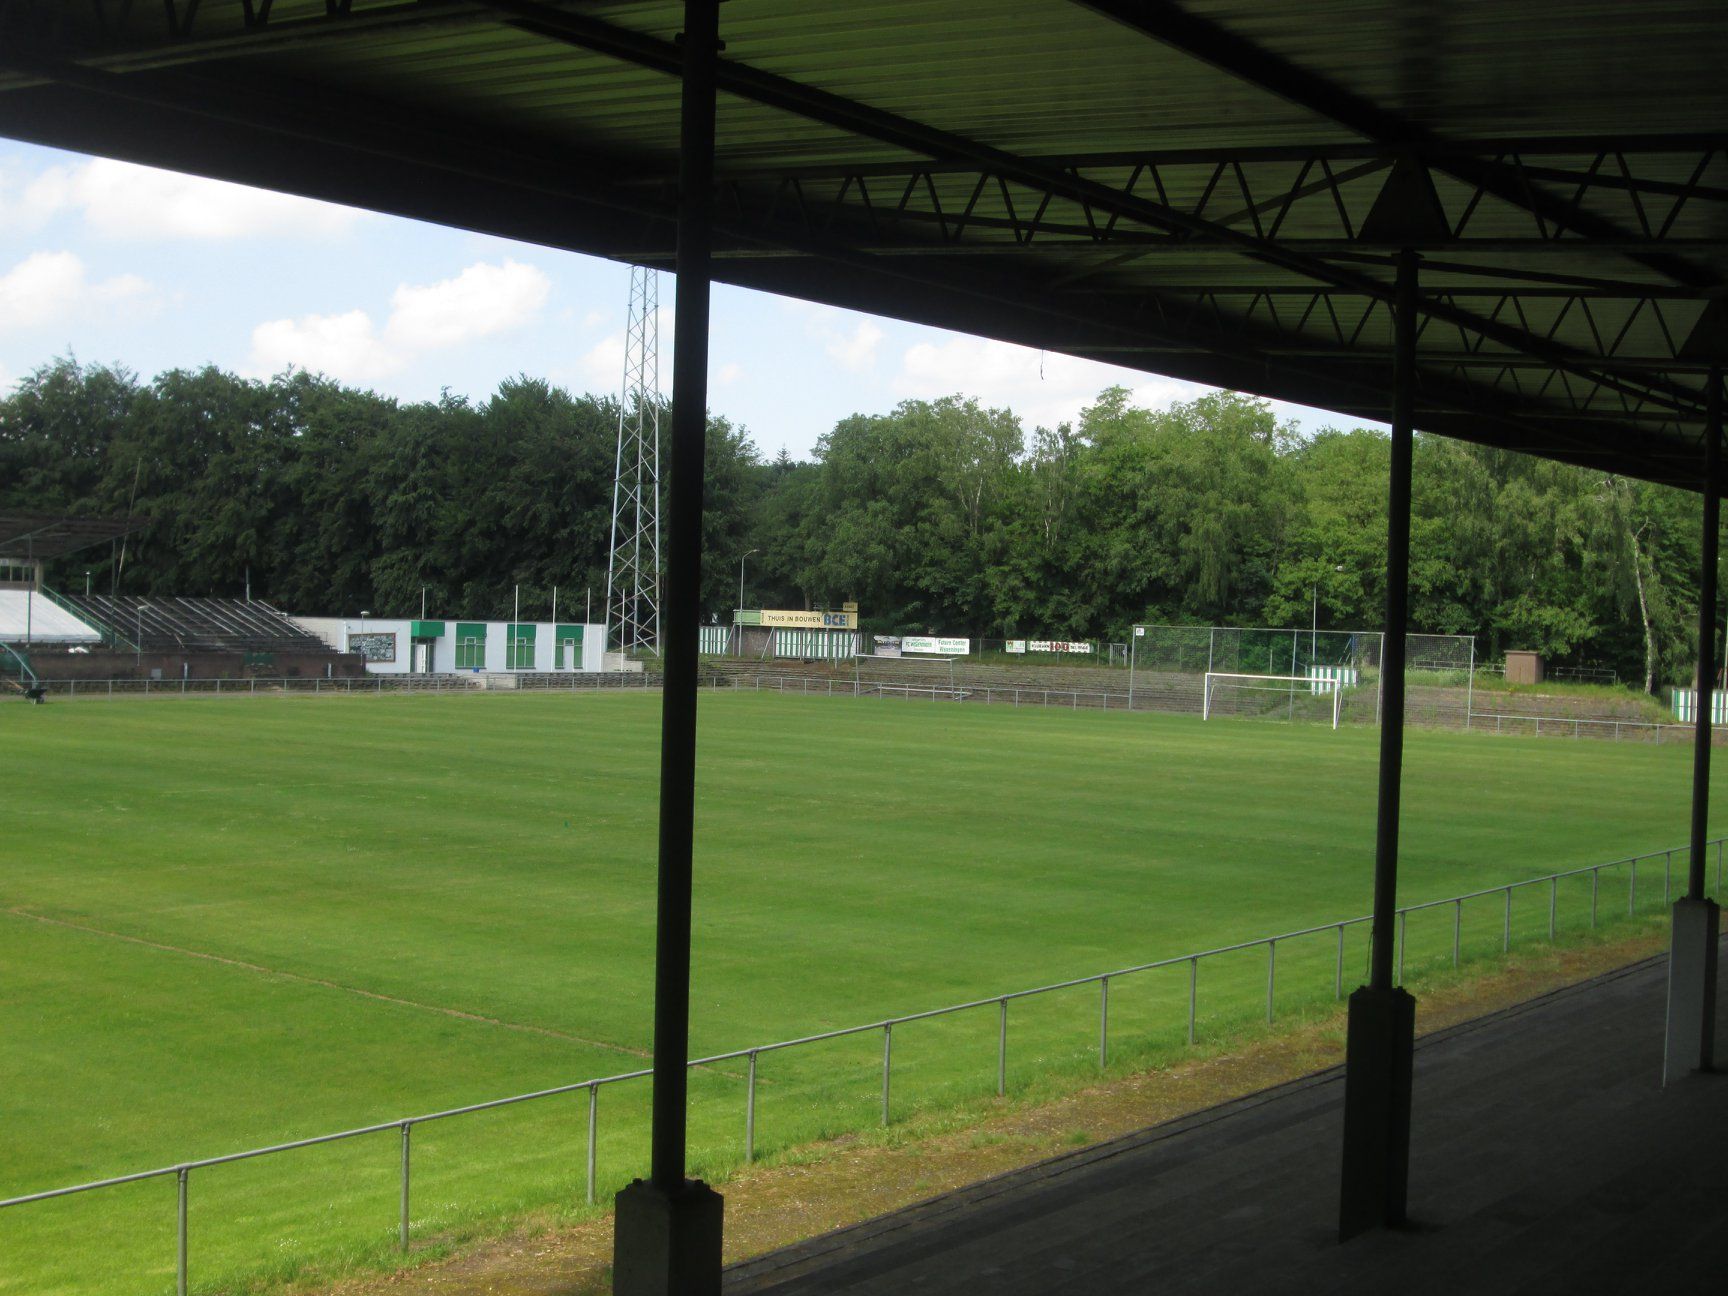 Voetbalstadion De Wageningse Berg - Generaal Foulkesweg 108 - Wageningen